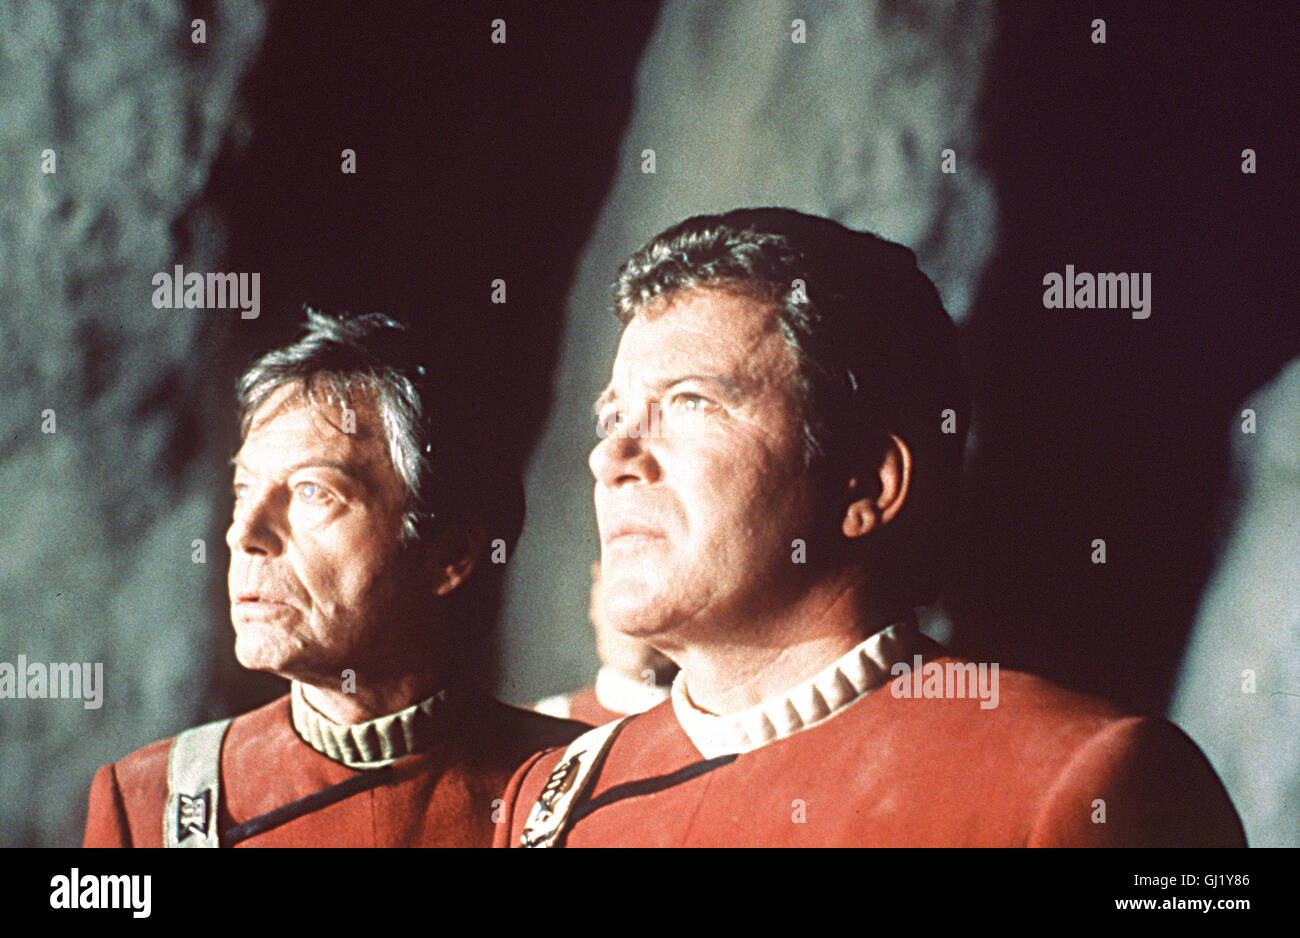 STAR TREK III - Auf der Suche nach il sig. SPOCK Star Trek III - Alla ricerca di Spock USA 1984 - Leonard Nimoy Spock hat im Kampf um die Wunderwaffe 'GENESIS' sein Leben verloren. Unter dem Einfluss der Genesis-Wirkung wird er jedoch wieder regeneriert und in ein lebendes Wesen verwandelt. Bei diesem Prozess ist sein Geist auf Abwege geraten und befindet sich nun im Körper des reichlich verwirrten Dr McCoy. Szene mit togliere Kelley (McCoy) und William Shatner (Kirk) Regie: Leonard Nimoy aka. Star Trek III - Alla ricerca di Spock Foto Stock